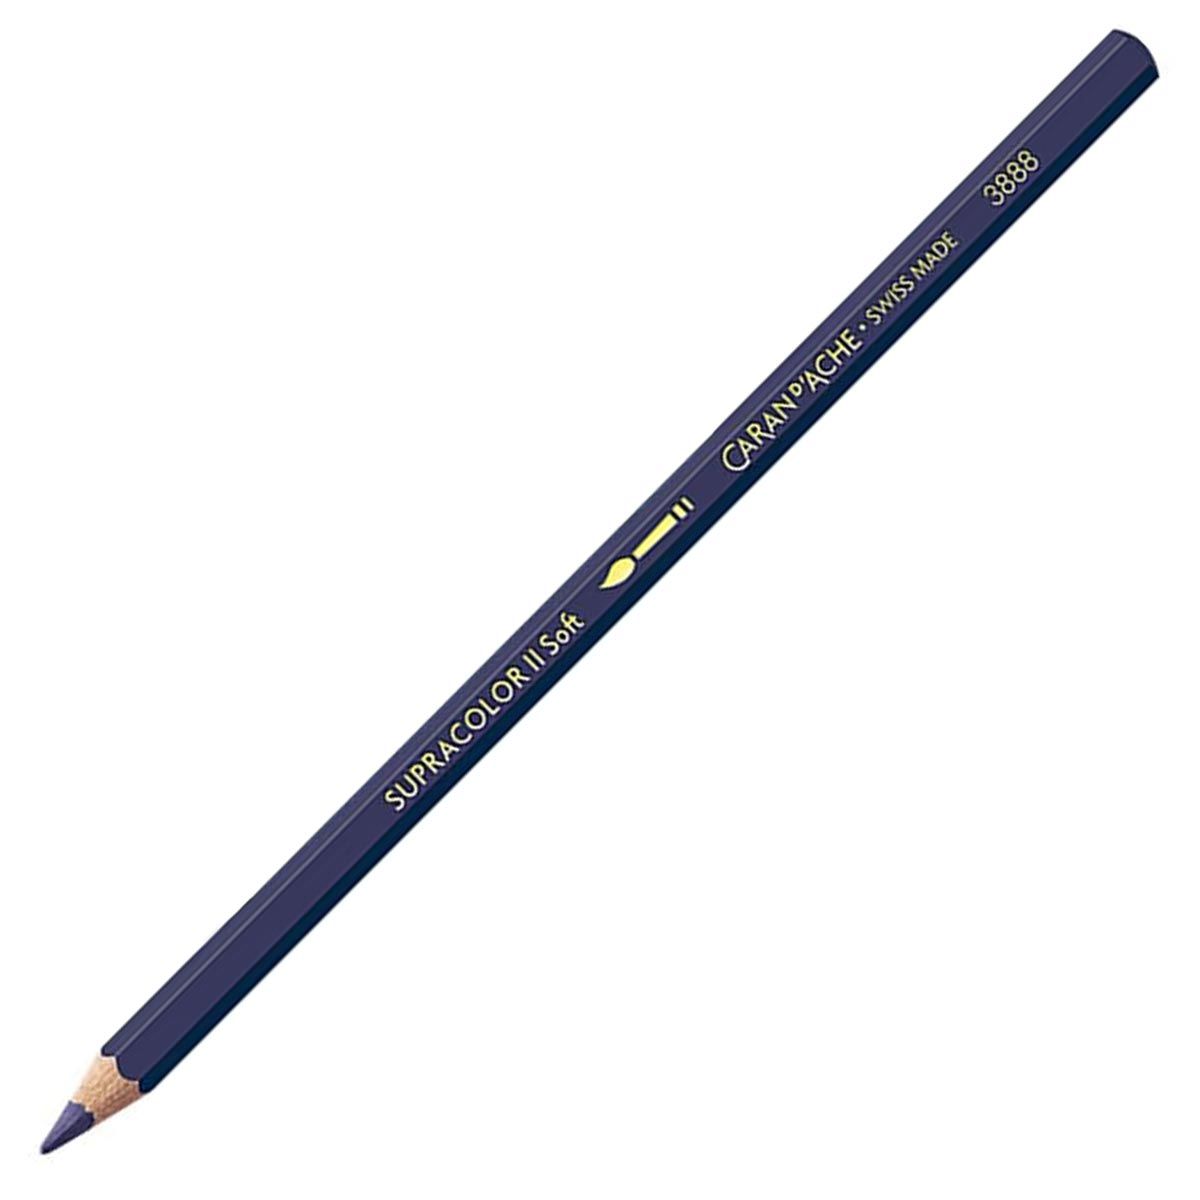 Caran d'Ache Supracolor ll Soft Aquarelle Pencil - Indigo Blue 139